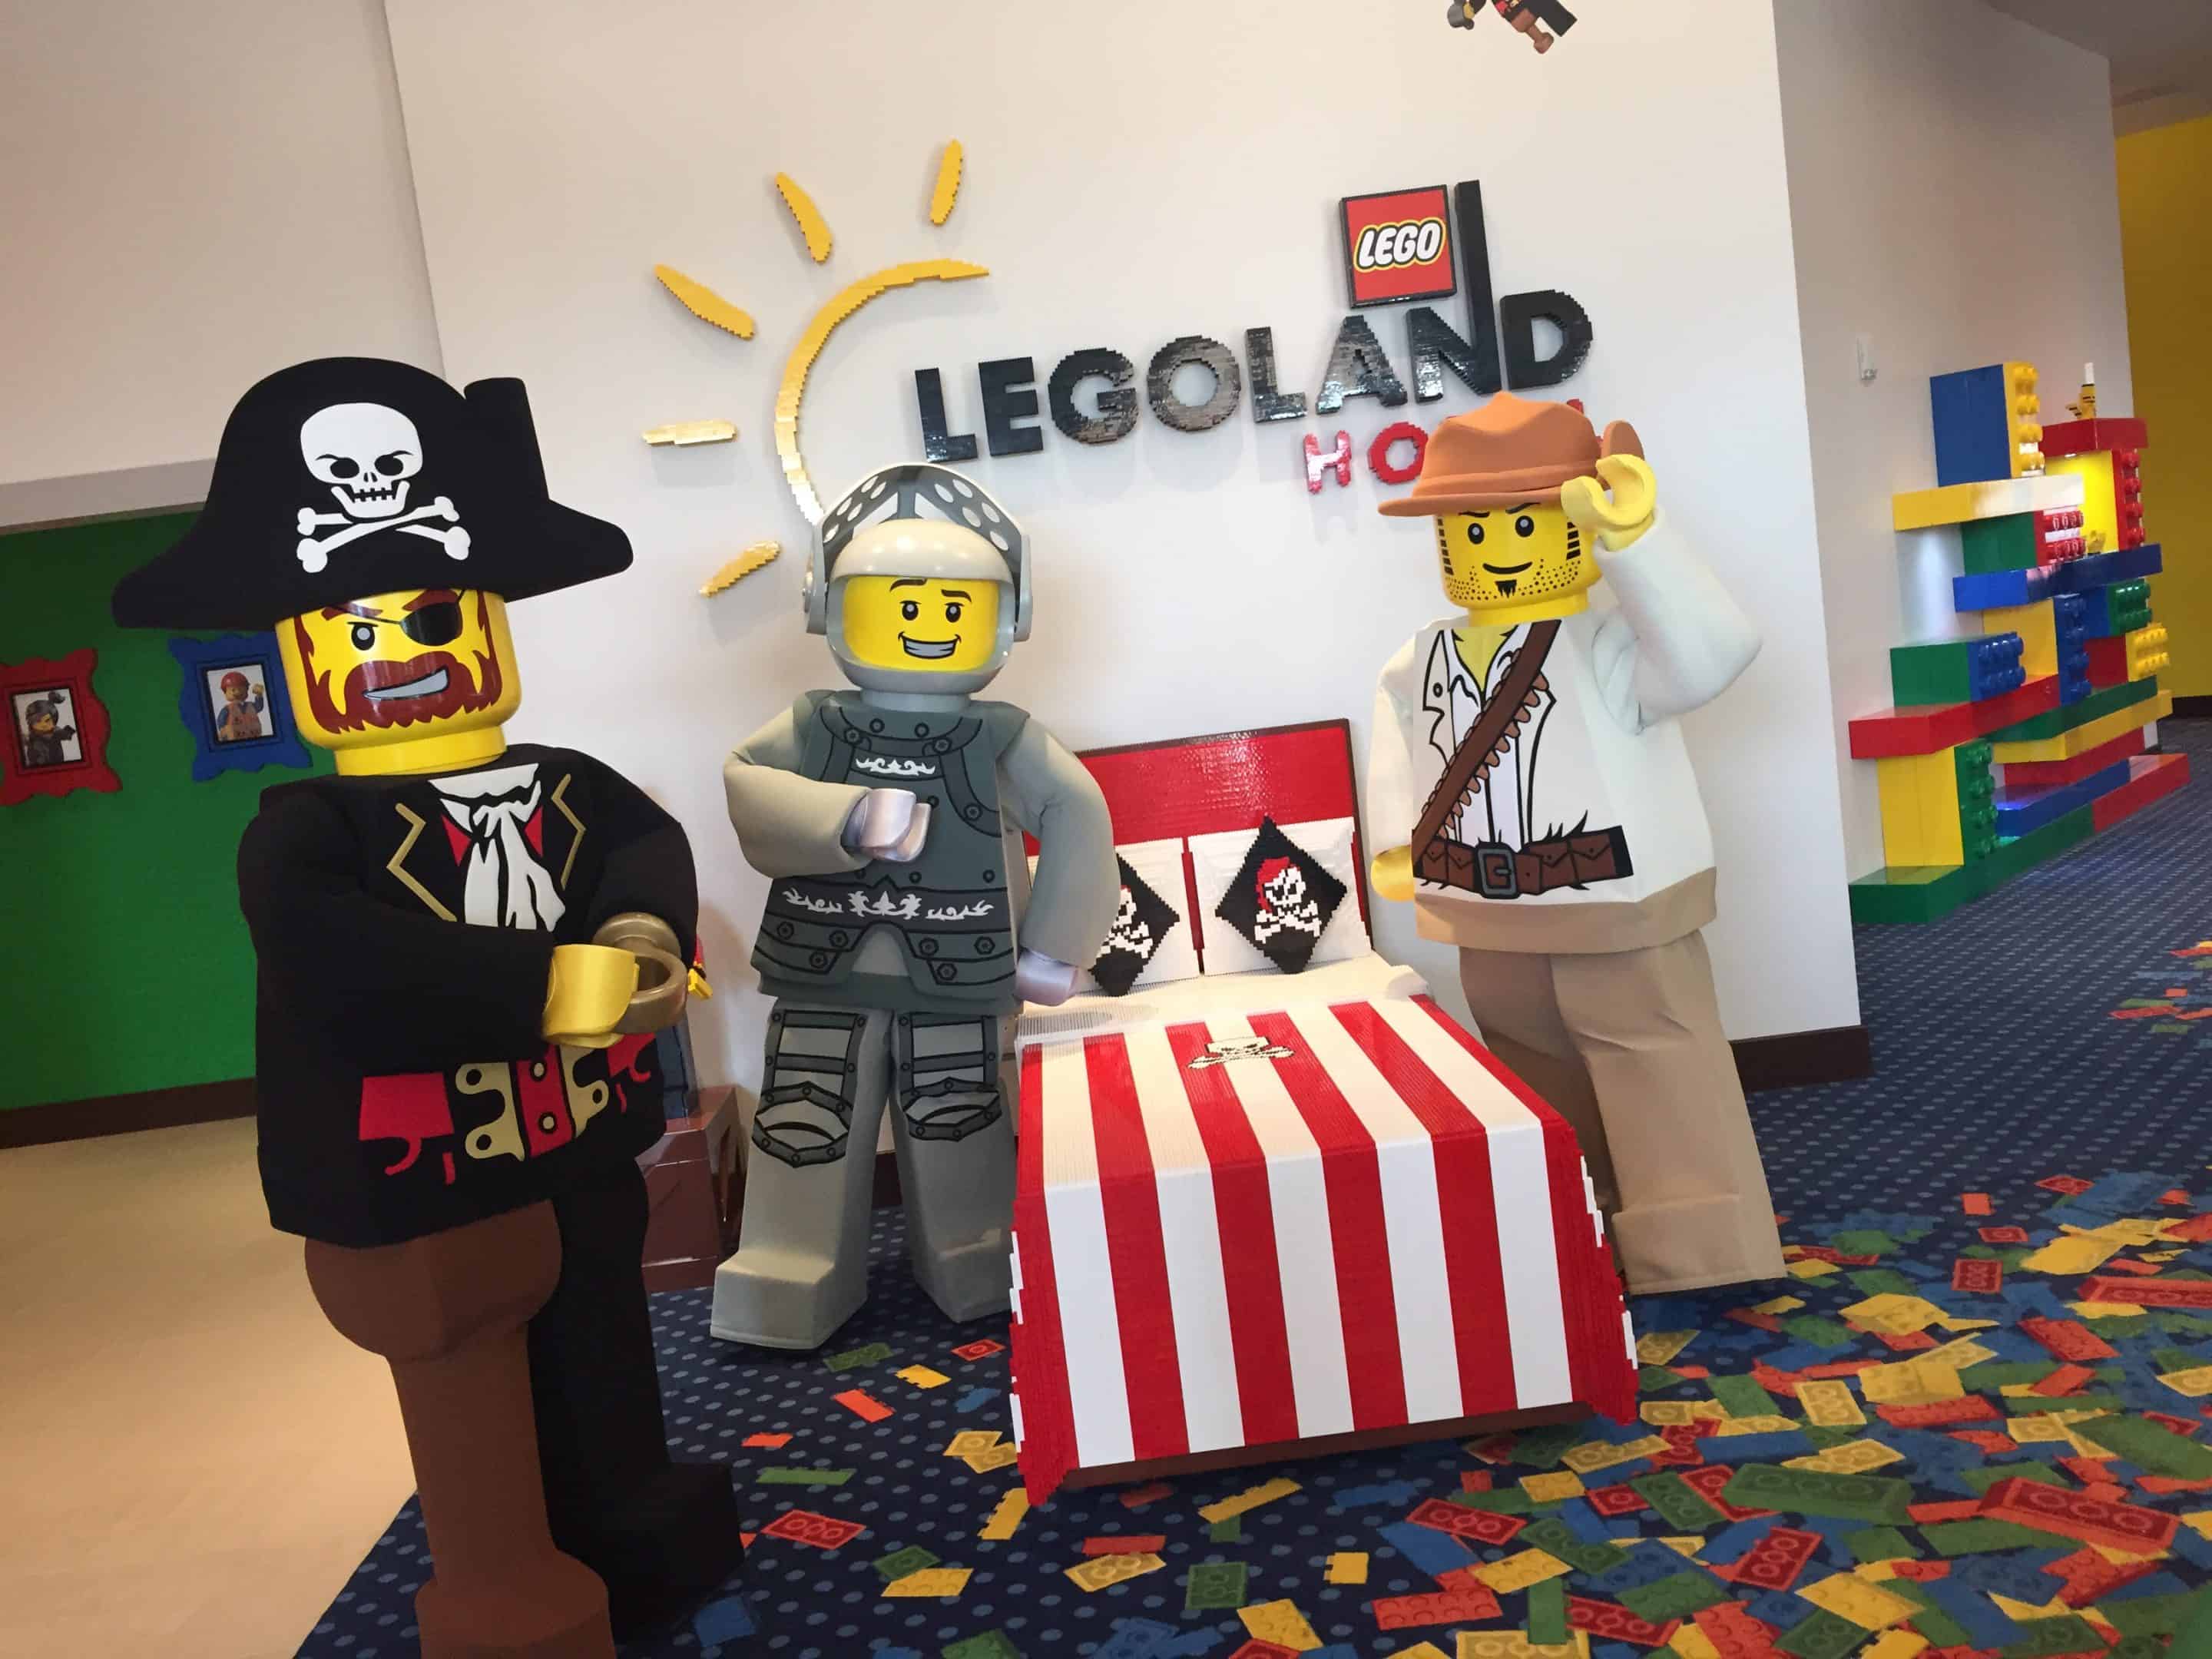 Legoland Hotel Check-in